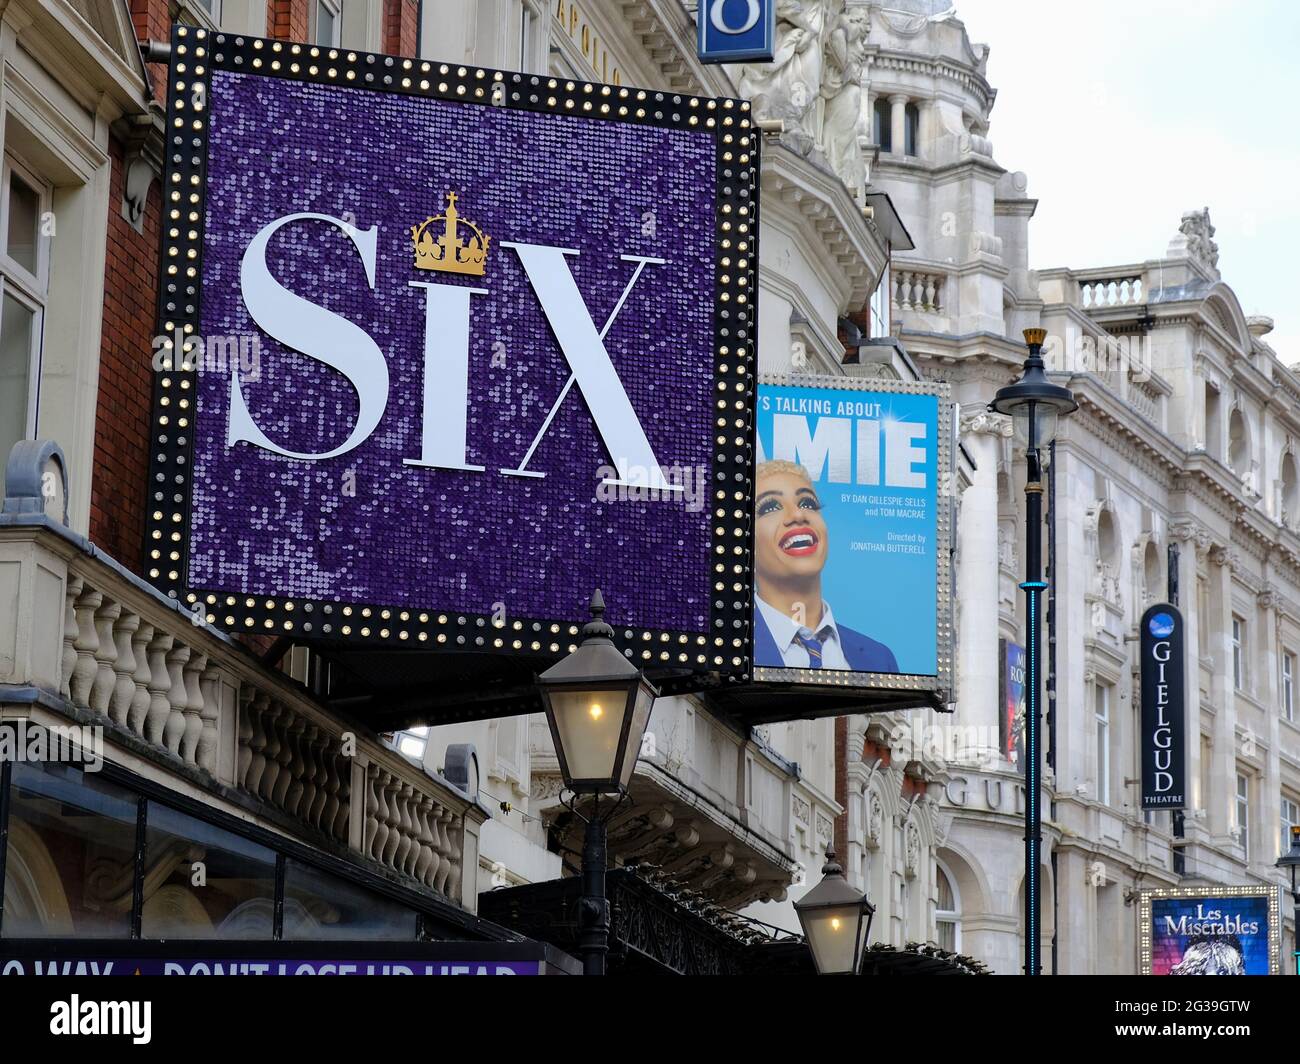 Le tavole pubblicitarie per i musical Six, Jamie e Les Miserables si trovano all'esterno dei teatri di Shaftesbury Avenue, mentre l'industria lotta durante Covid. Foto Stock